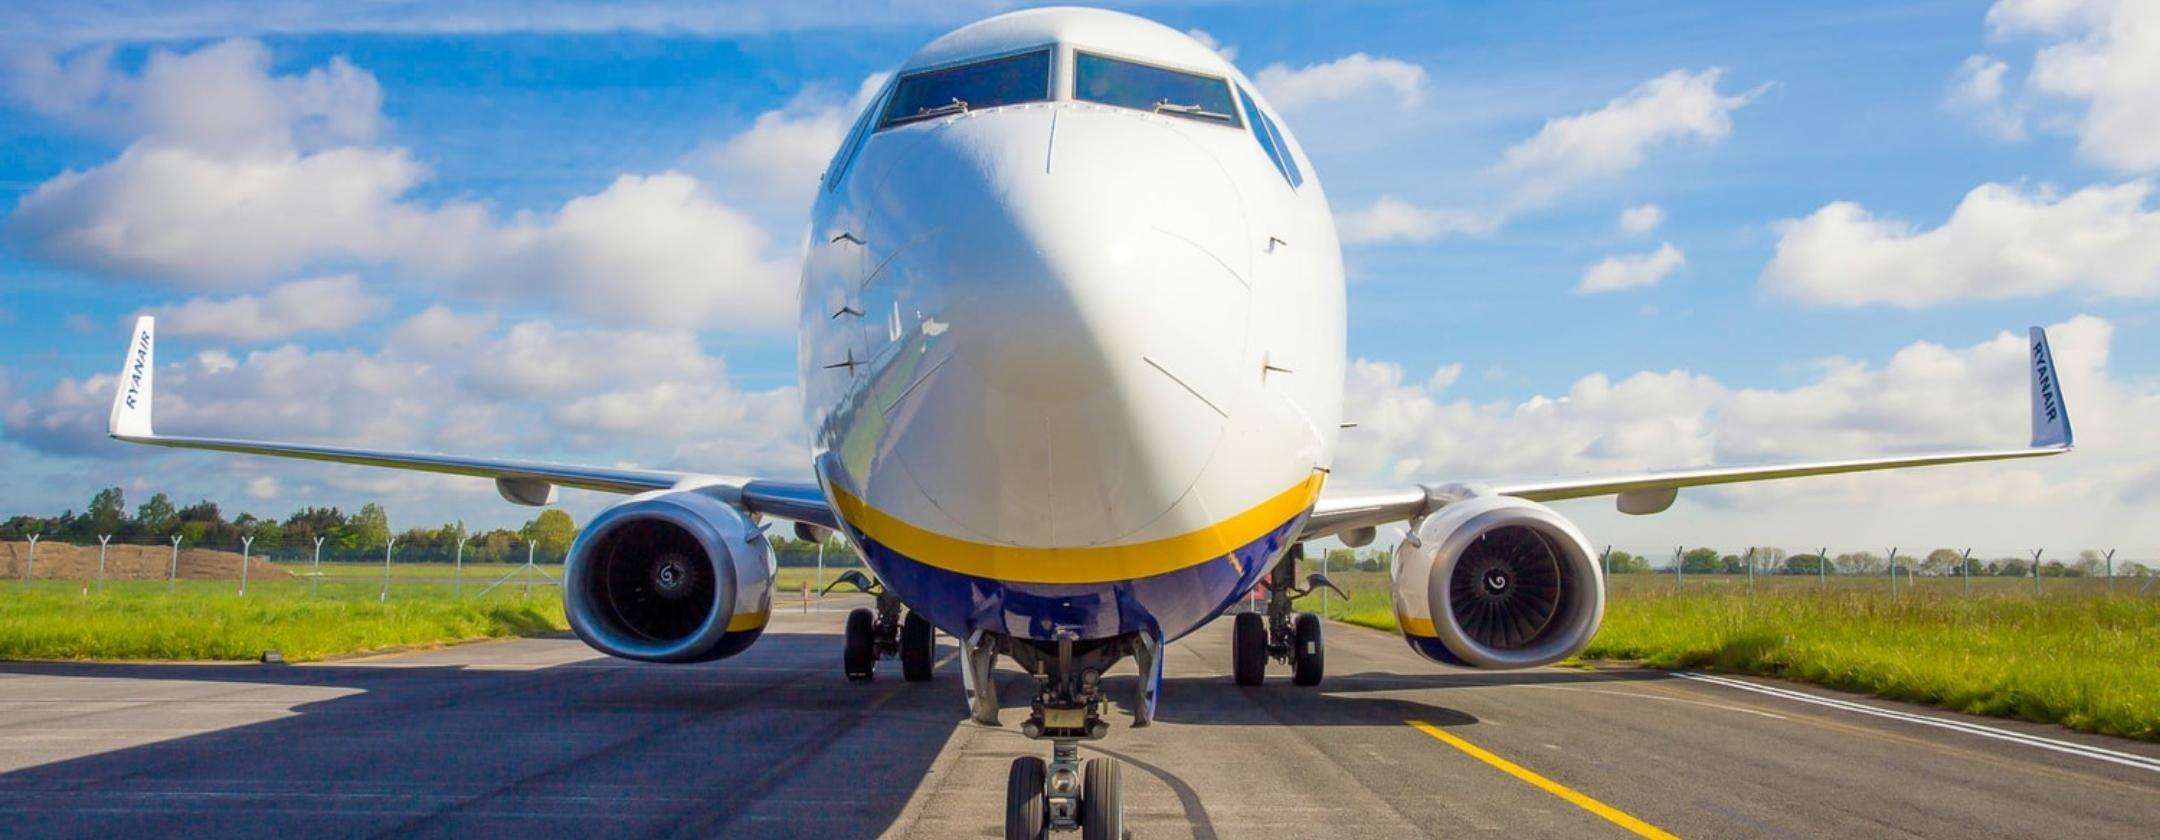 Ryanair aumenta i prezzi: come abbatterli con una VPN